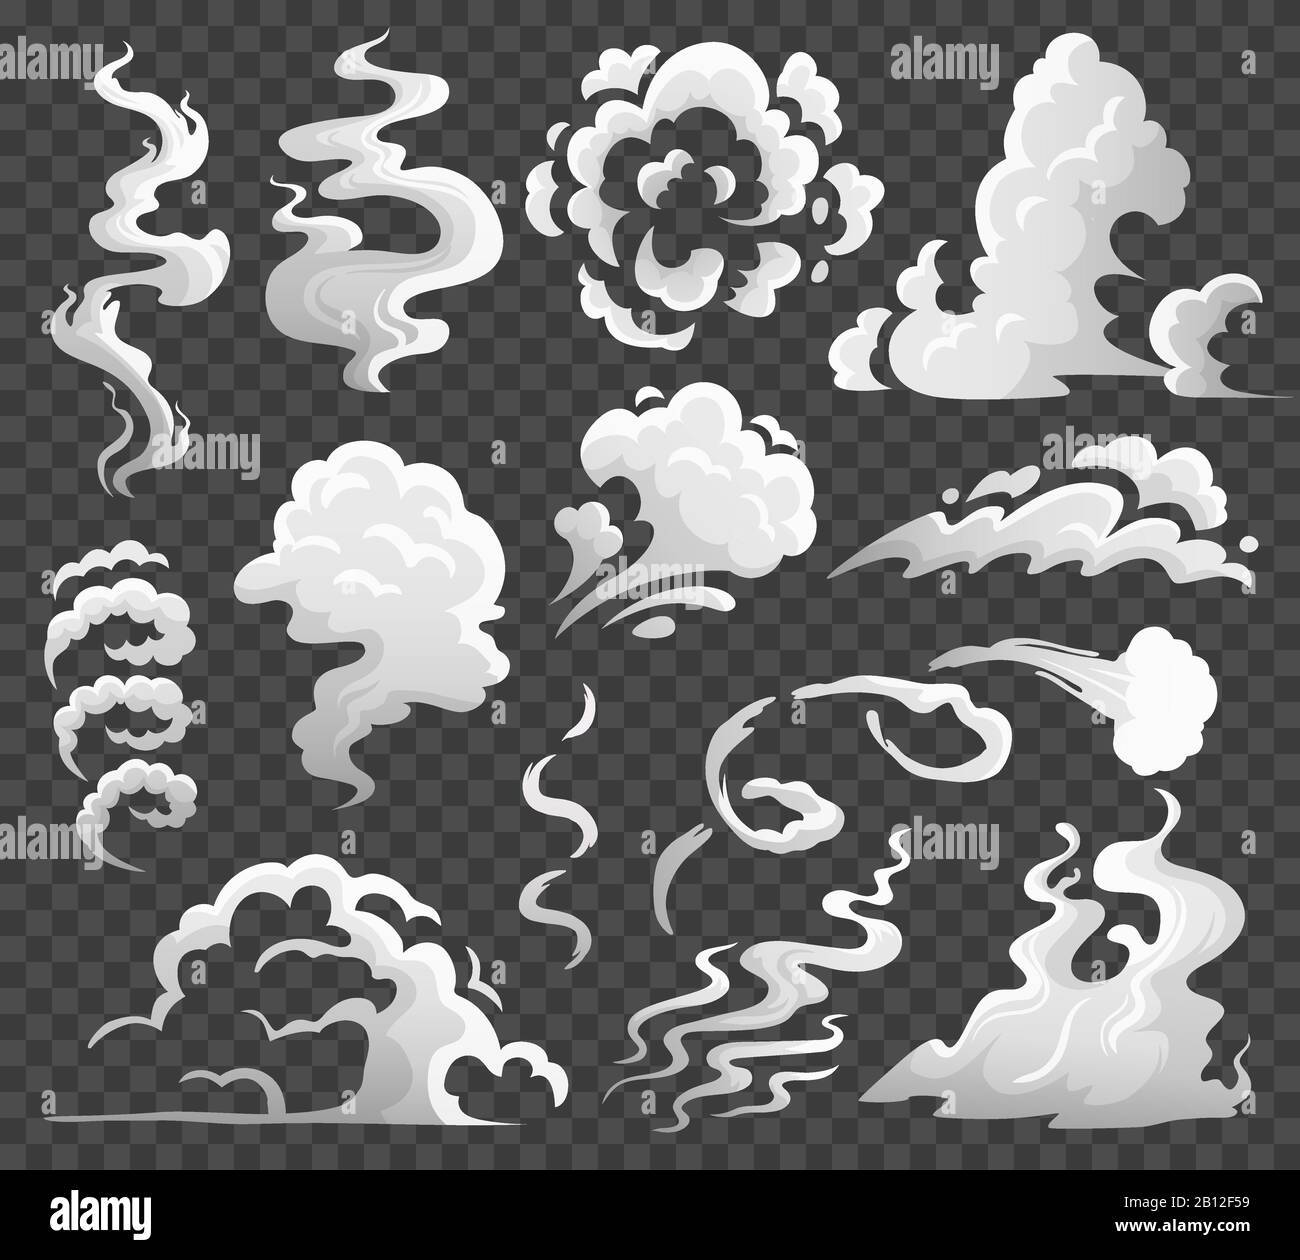 Nubes de humo. Nube de vapor cómico, embarrado de humo y flujo de vapor. Nubes de polvo ilustración vectorial de dibujos animados aislados Ilustración del Vector